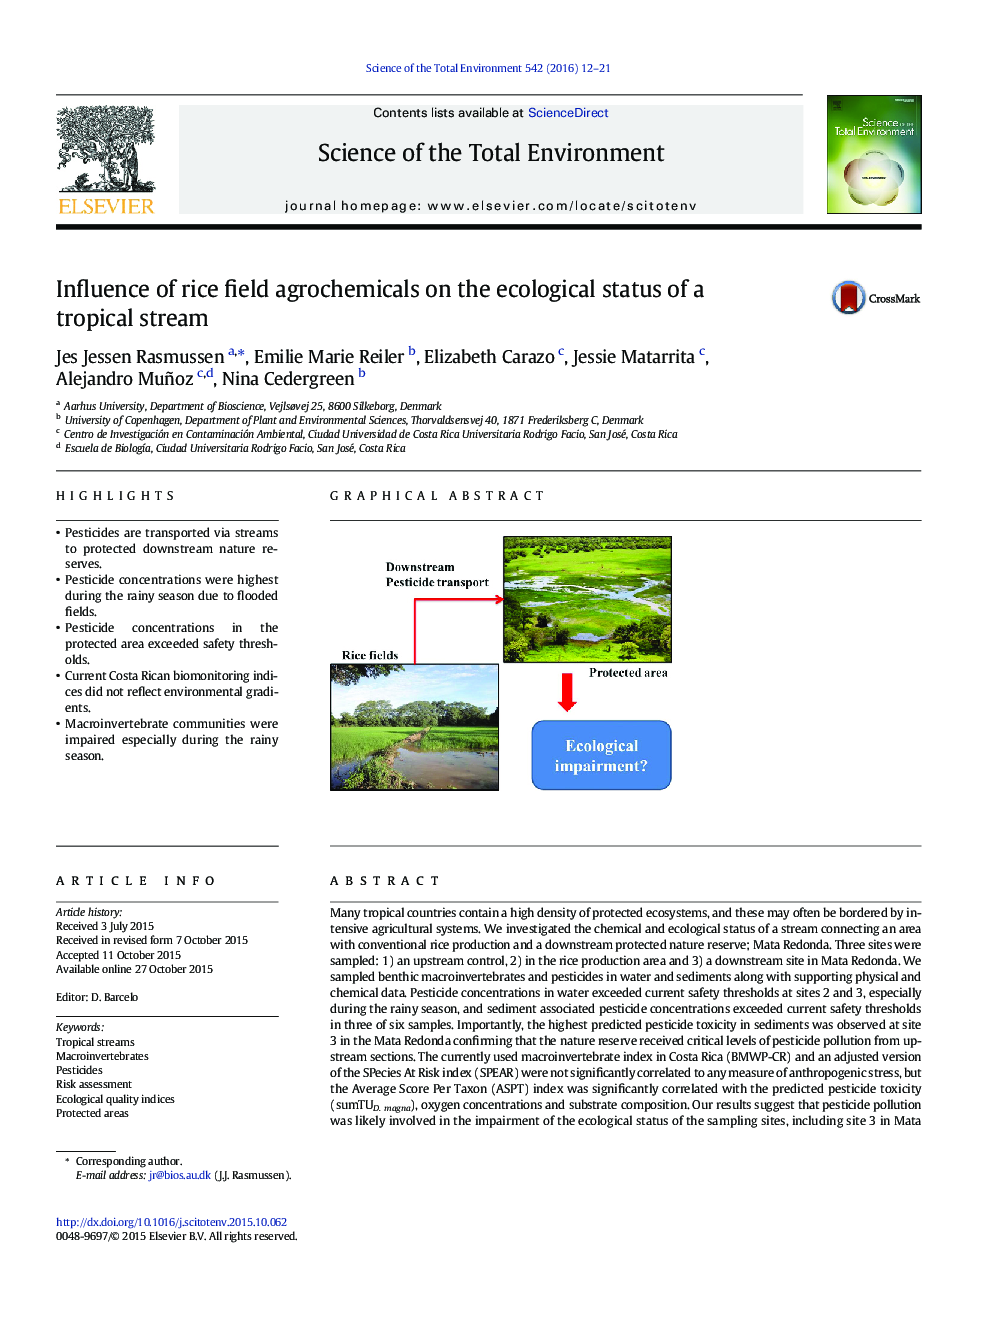 تأثیر گیاهان دارویی برنج بر وضعیت اکولوژیکی یک جریان گرمسیری 